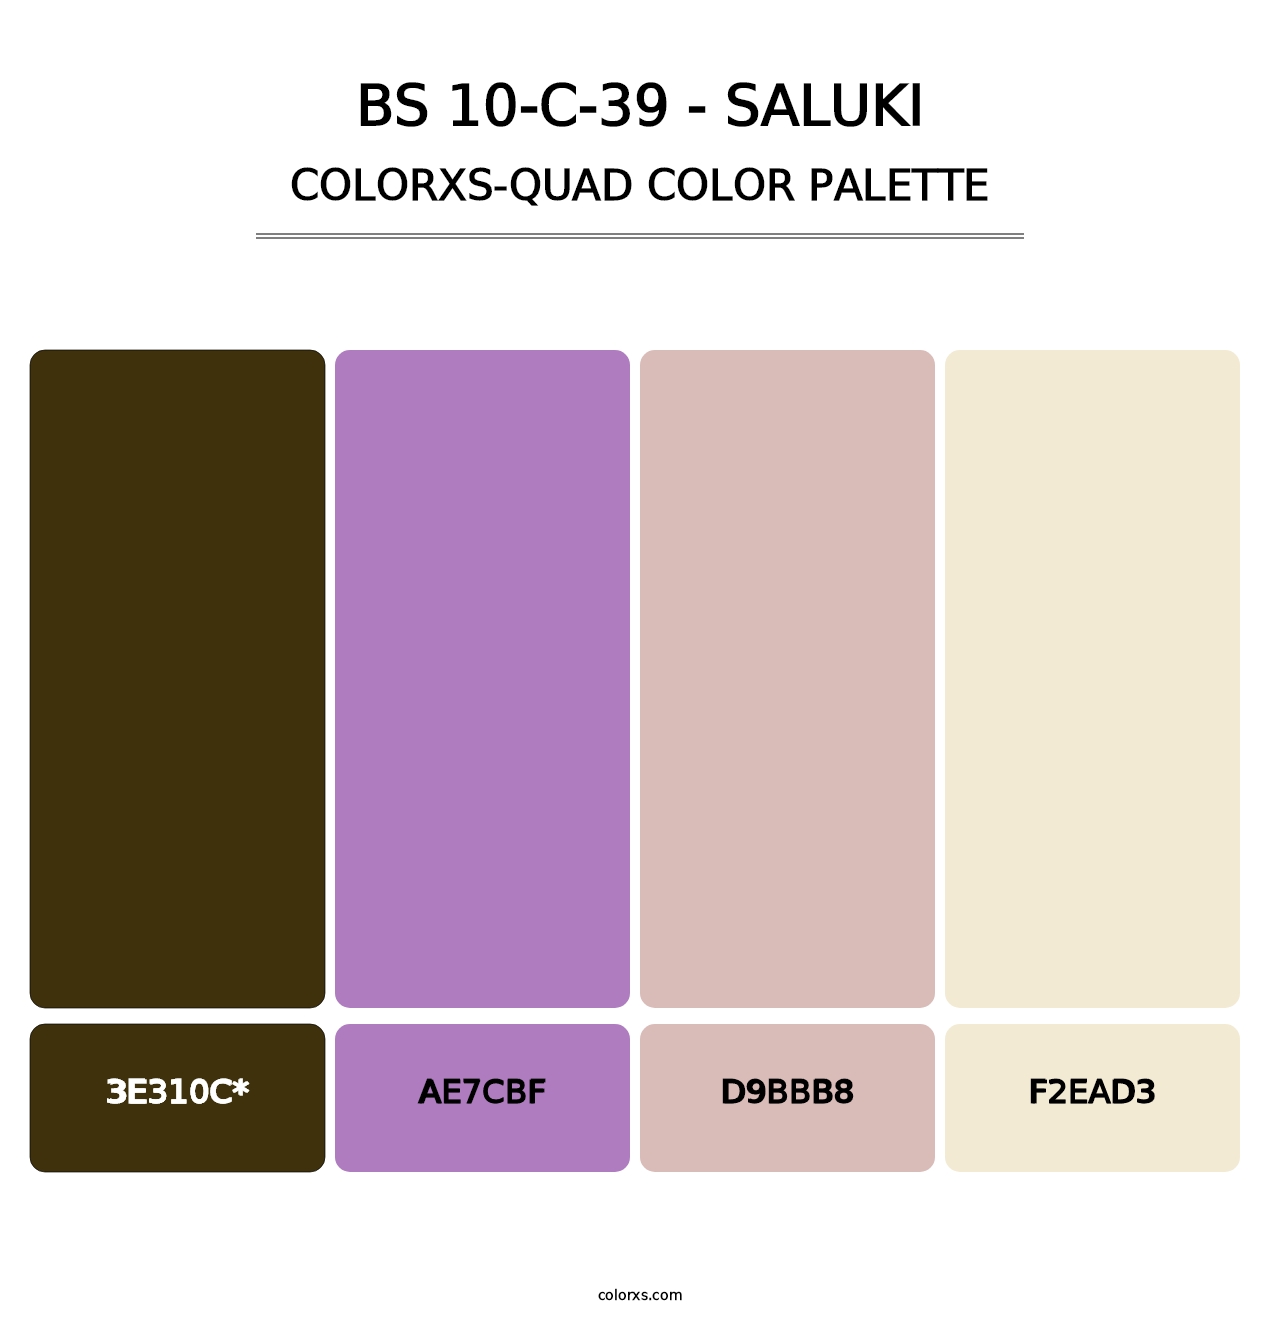 BS 10-C-39 - Saluki - Colorxs Quad Palette